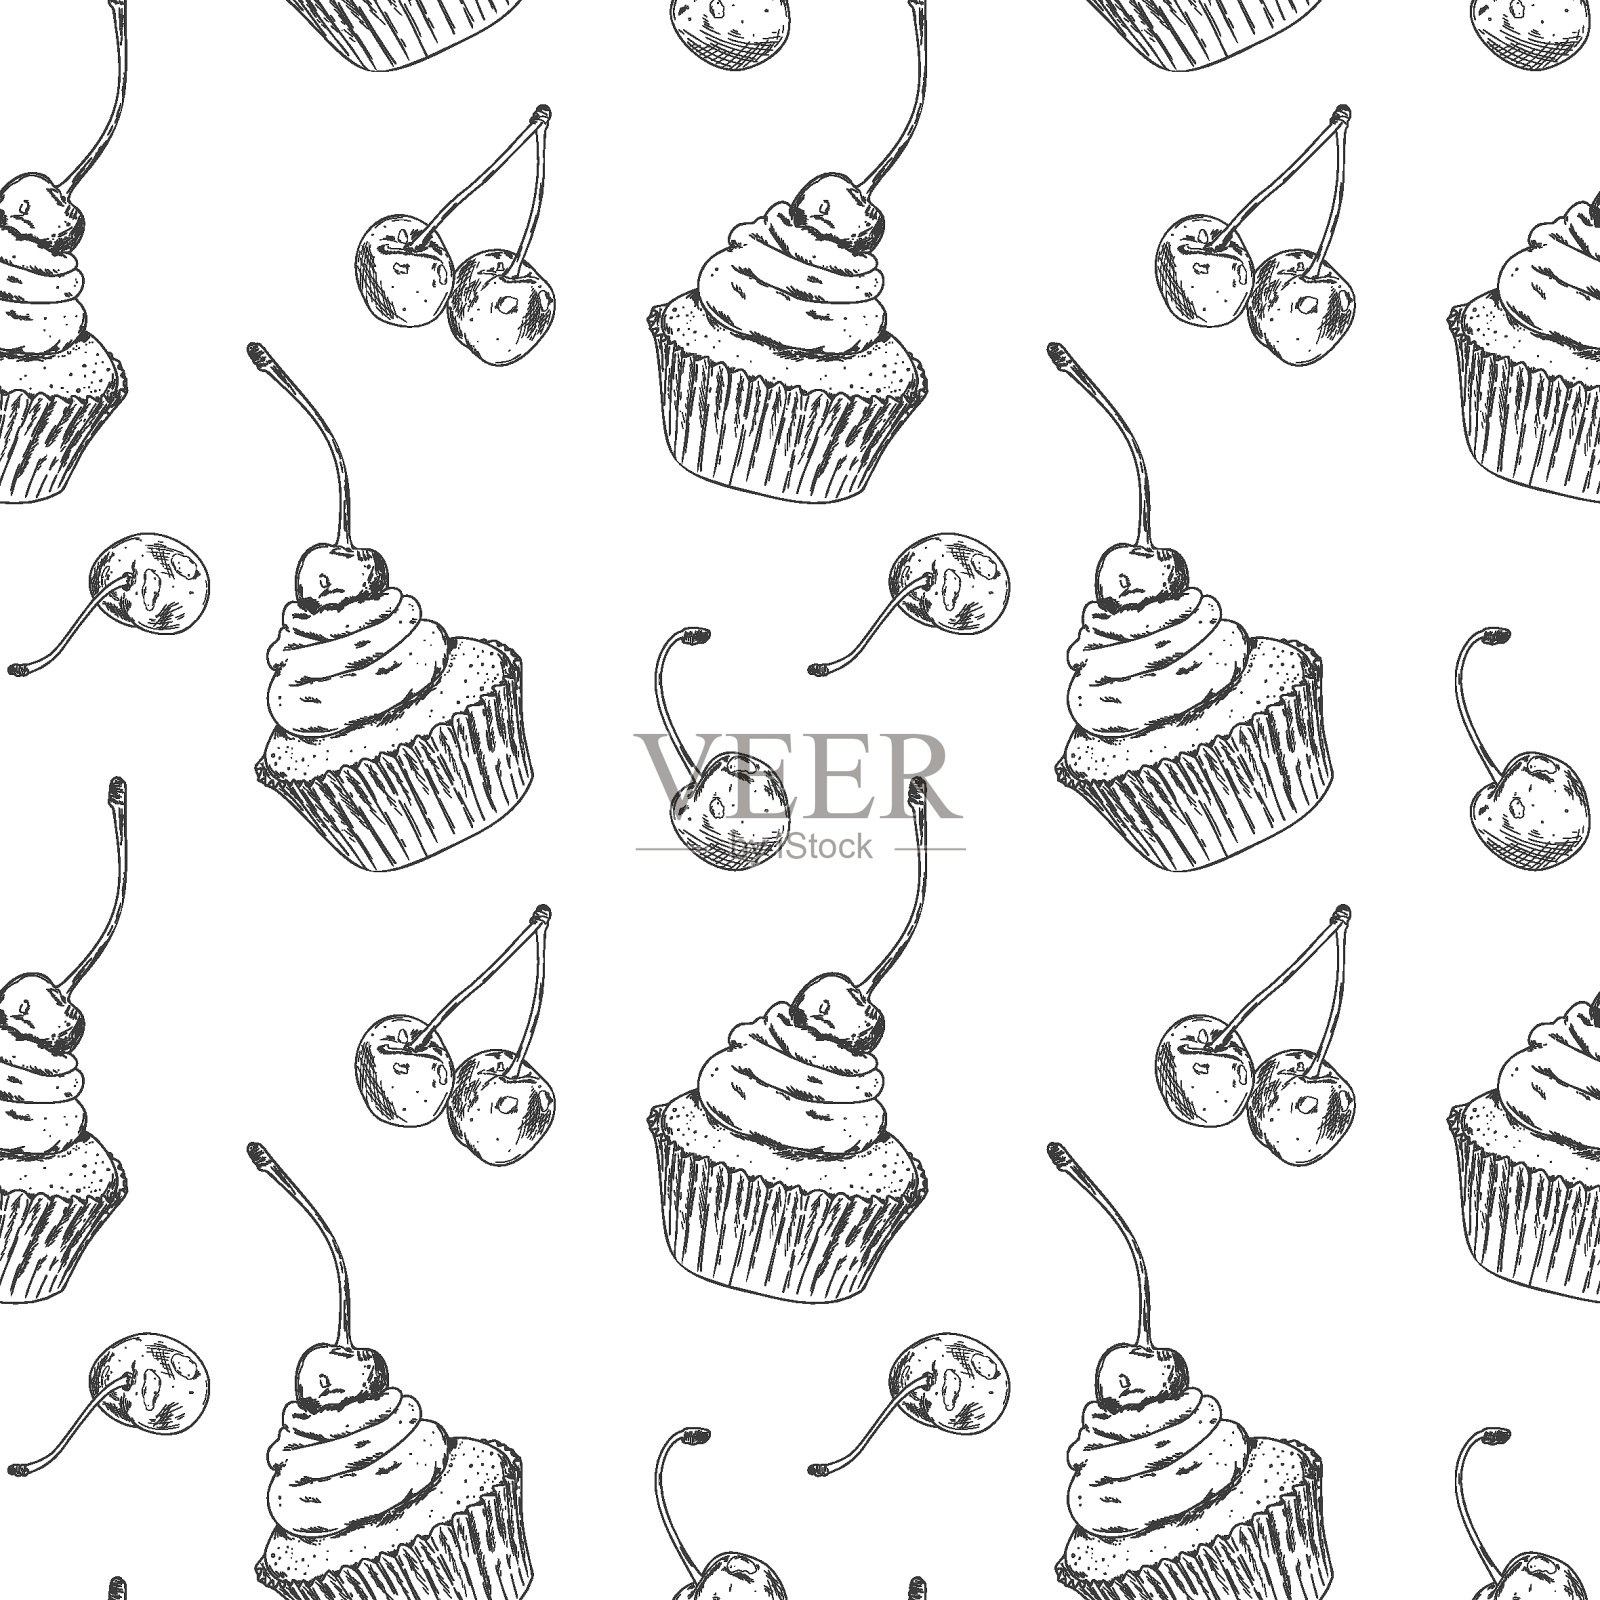 黑白纸杯蛋糕涂鸦小图插图 向量例证. 插画 包括有 图画, 婚礼, 蛋糕, 投反对票, 现有量, 咖啡馆 - 177013265